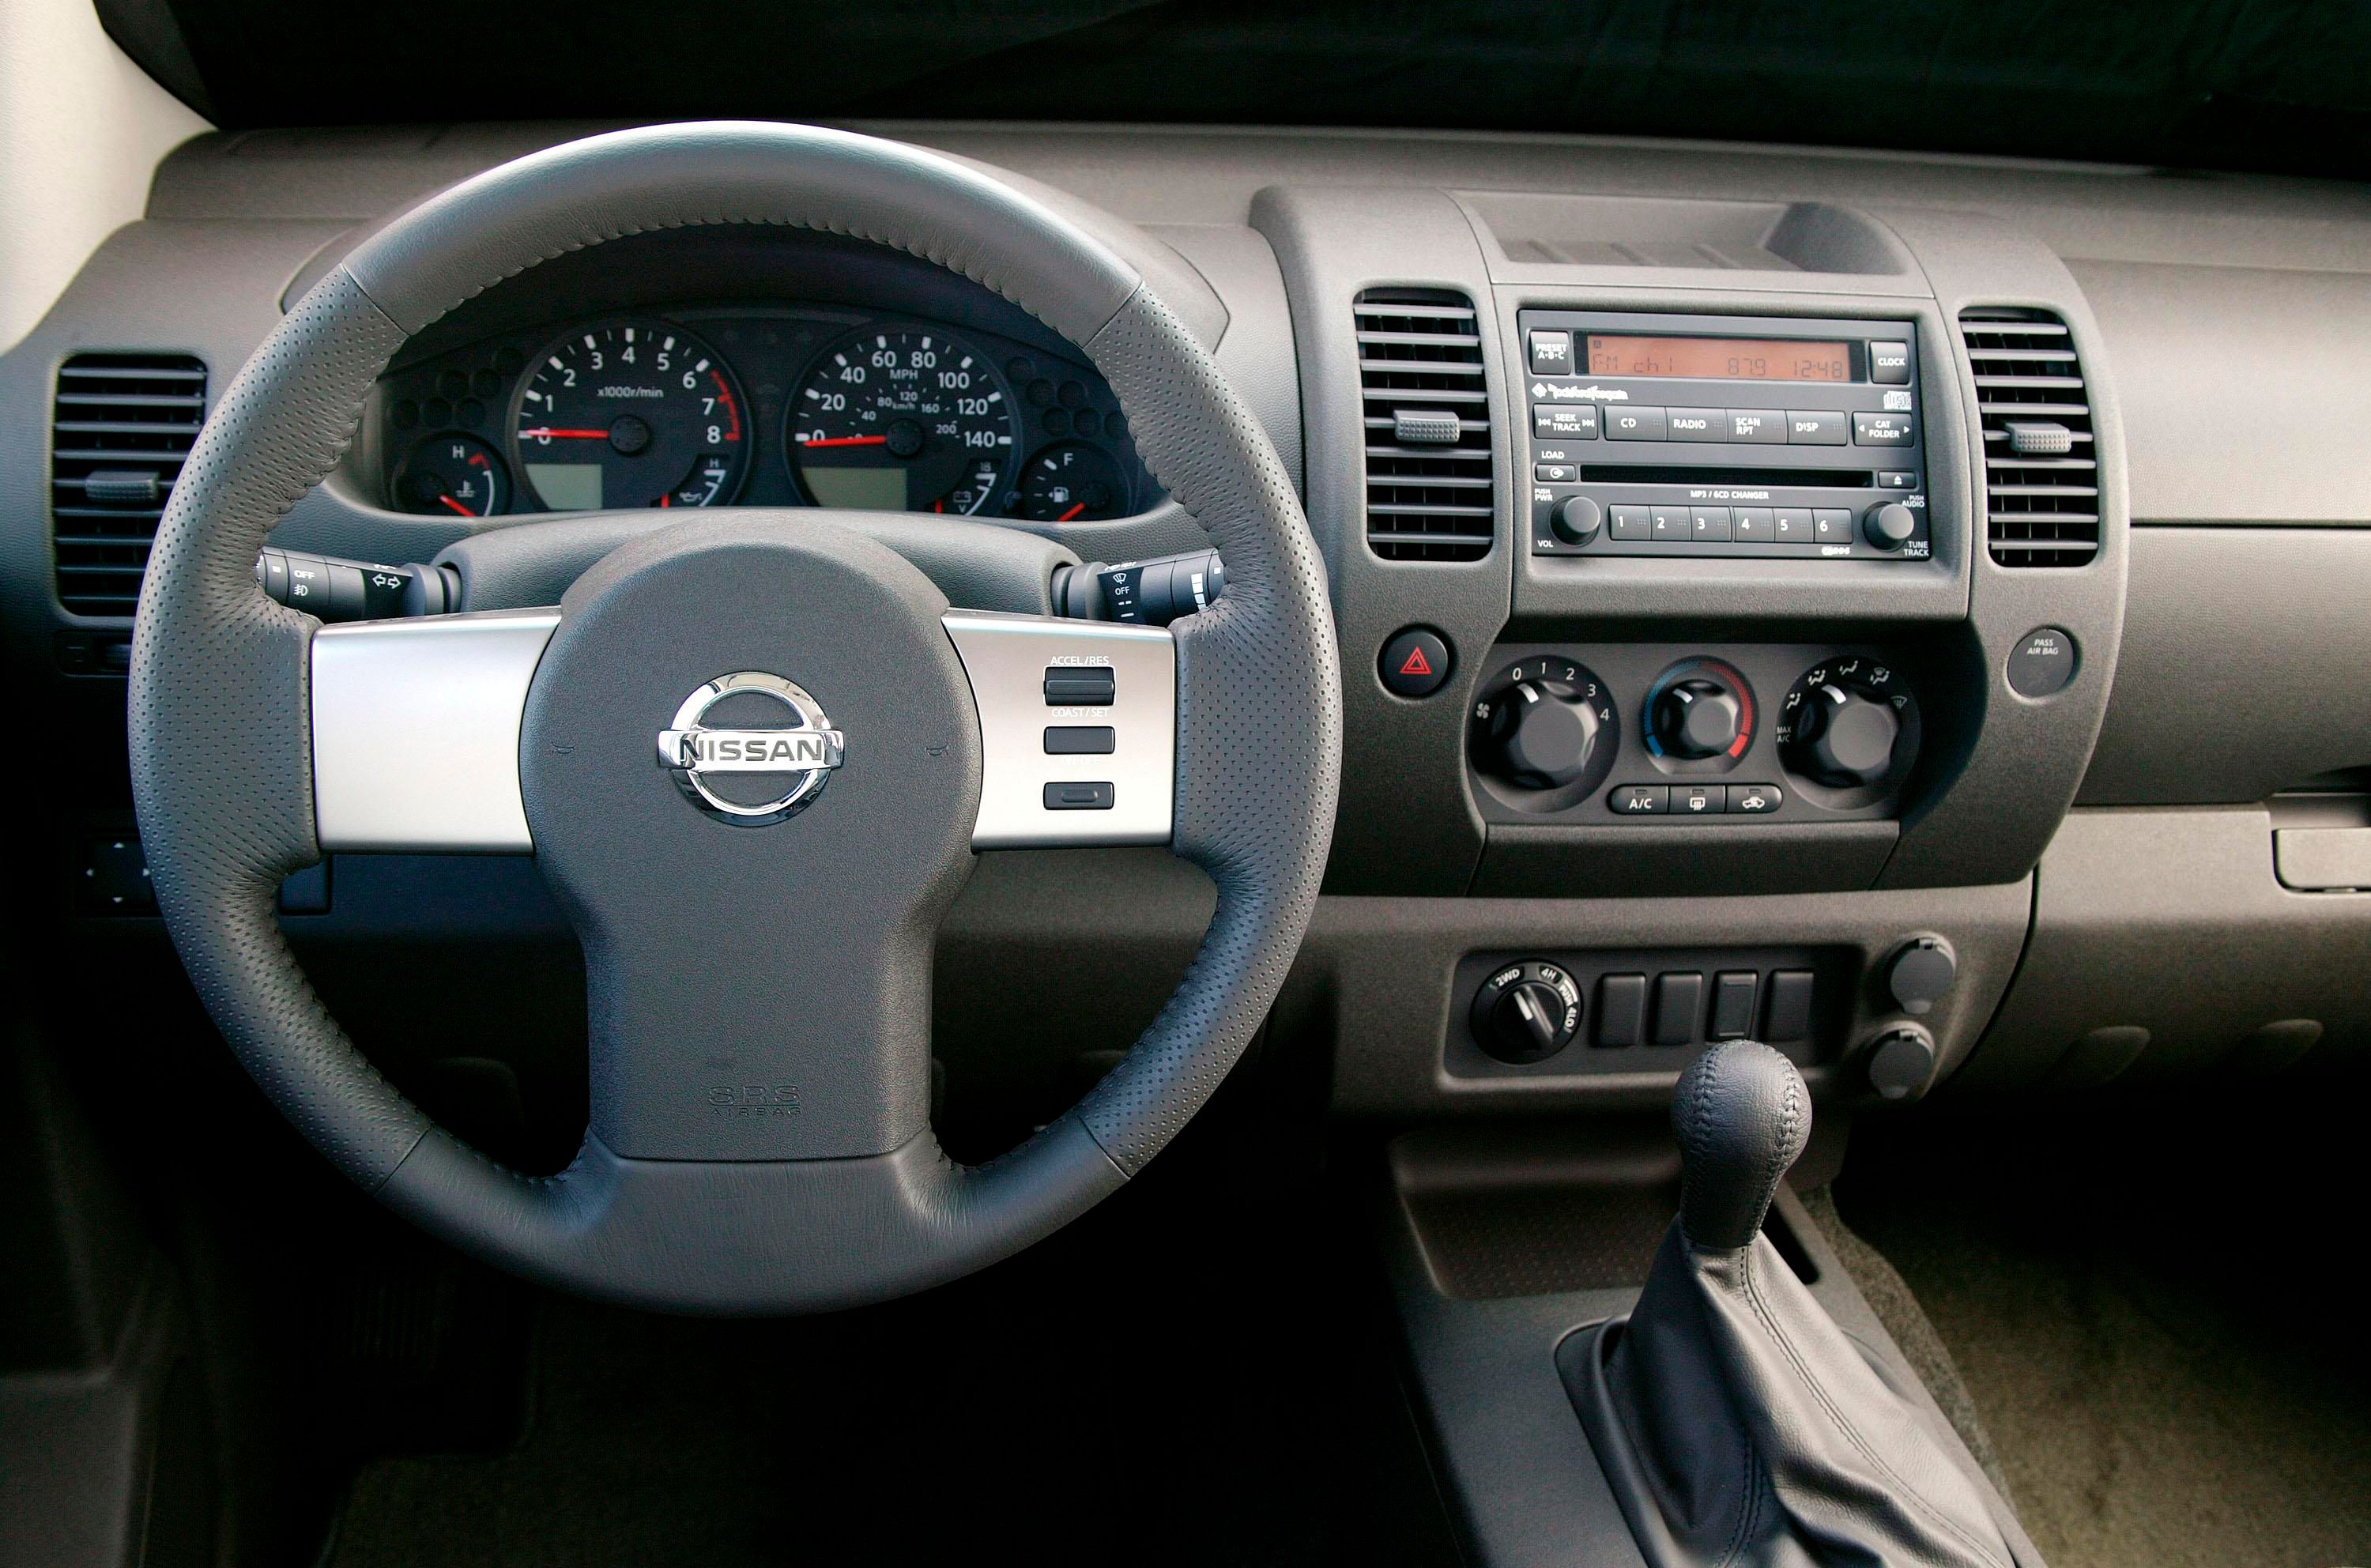 Nissan Xterra cockpit